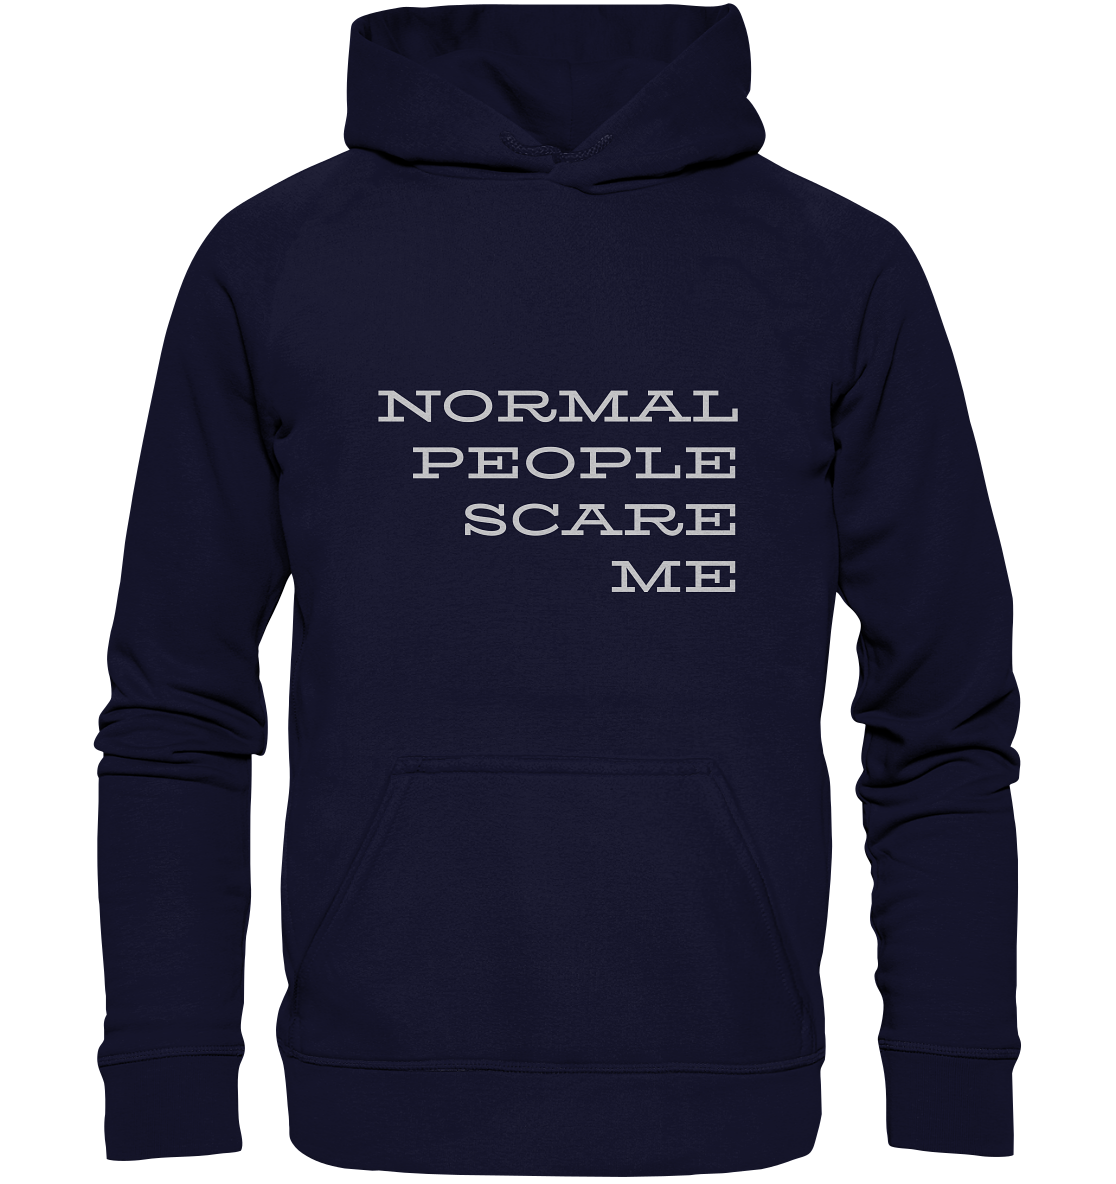 Hoodie mit Aufdruck "Normal people scare me", blau